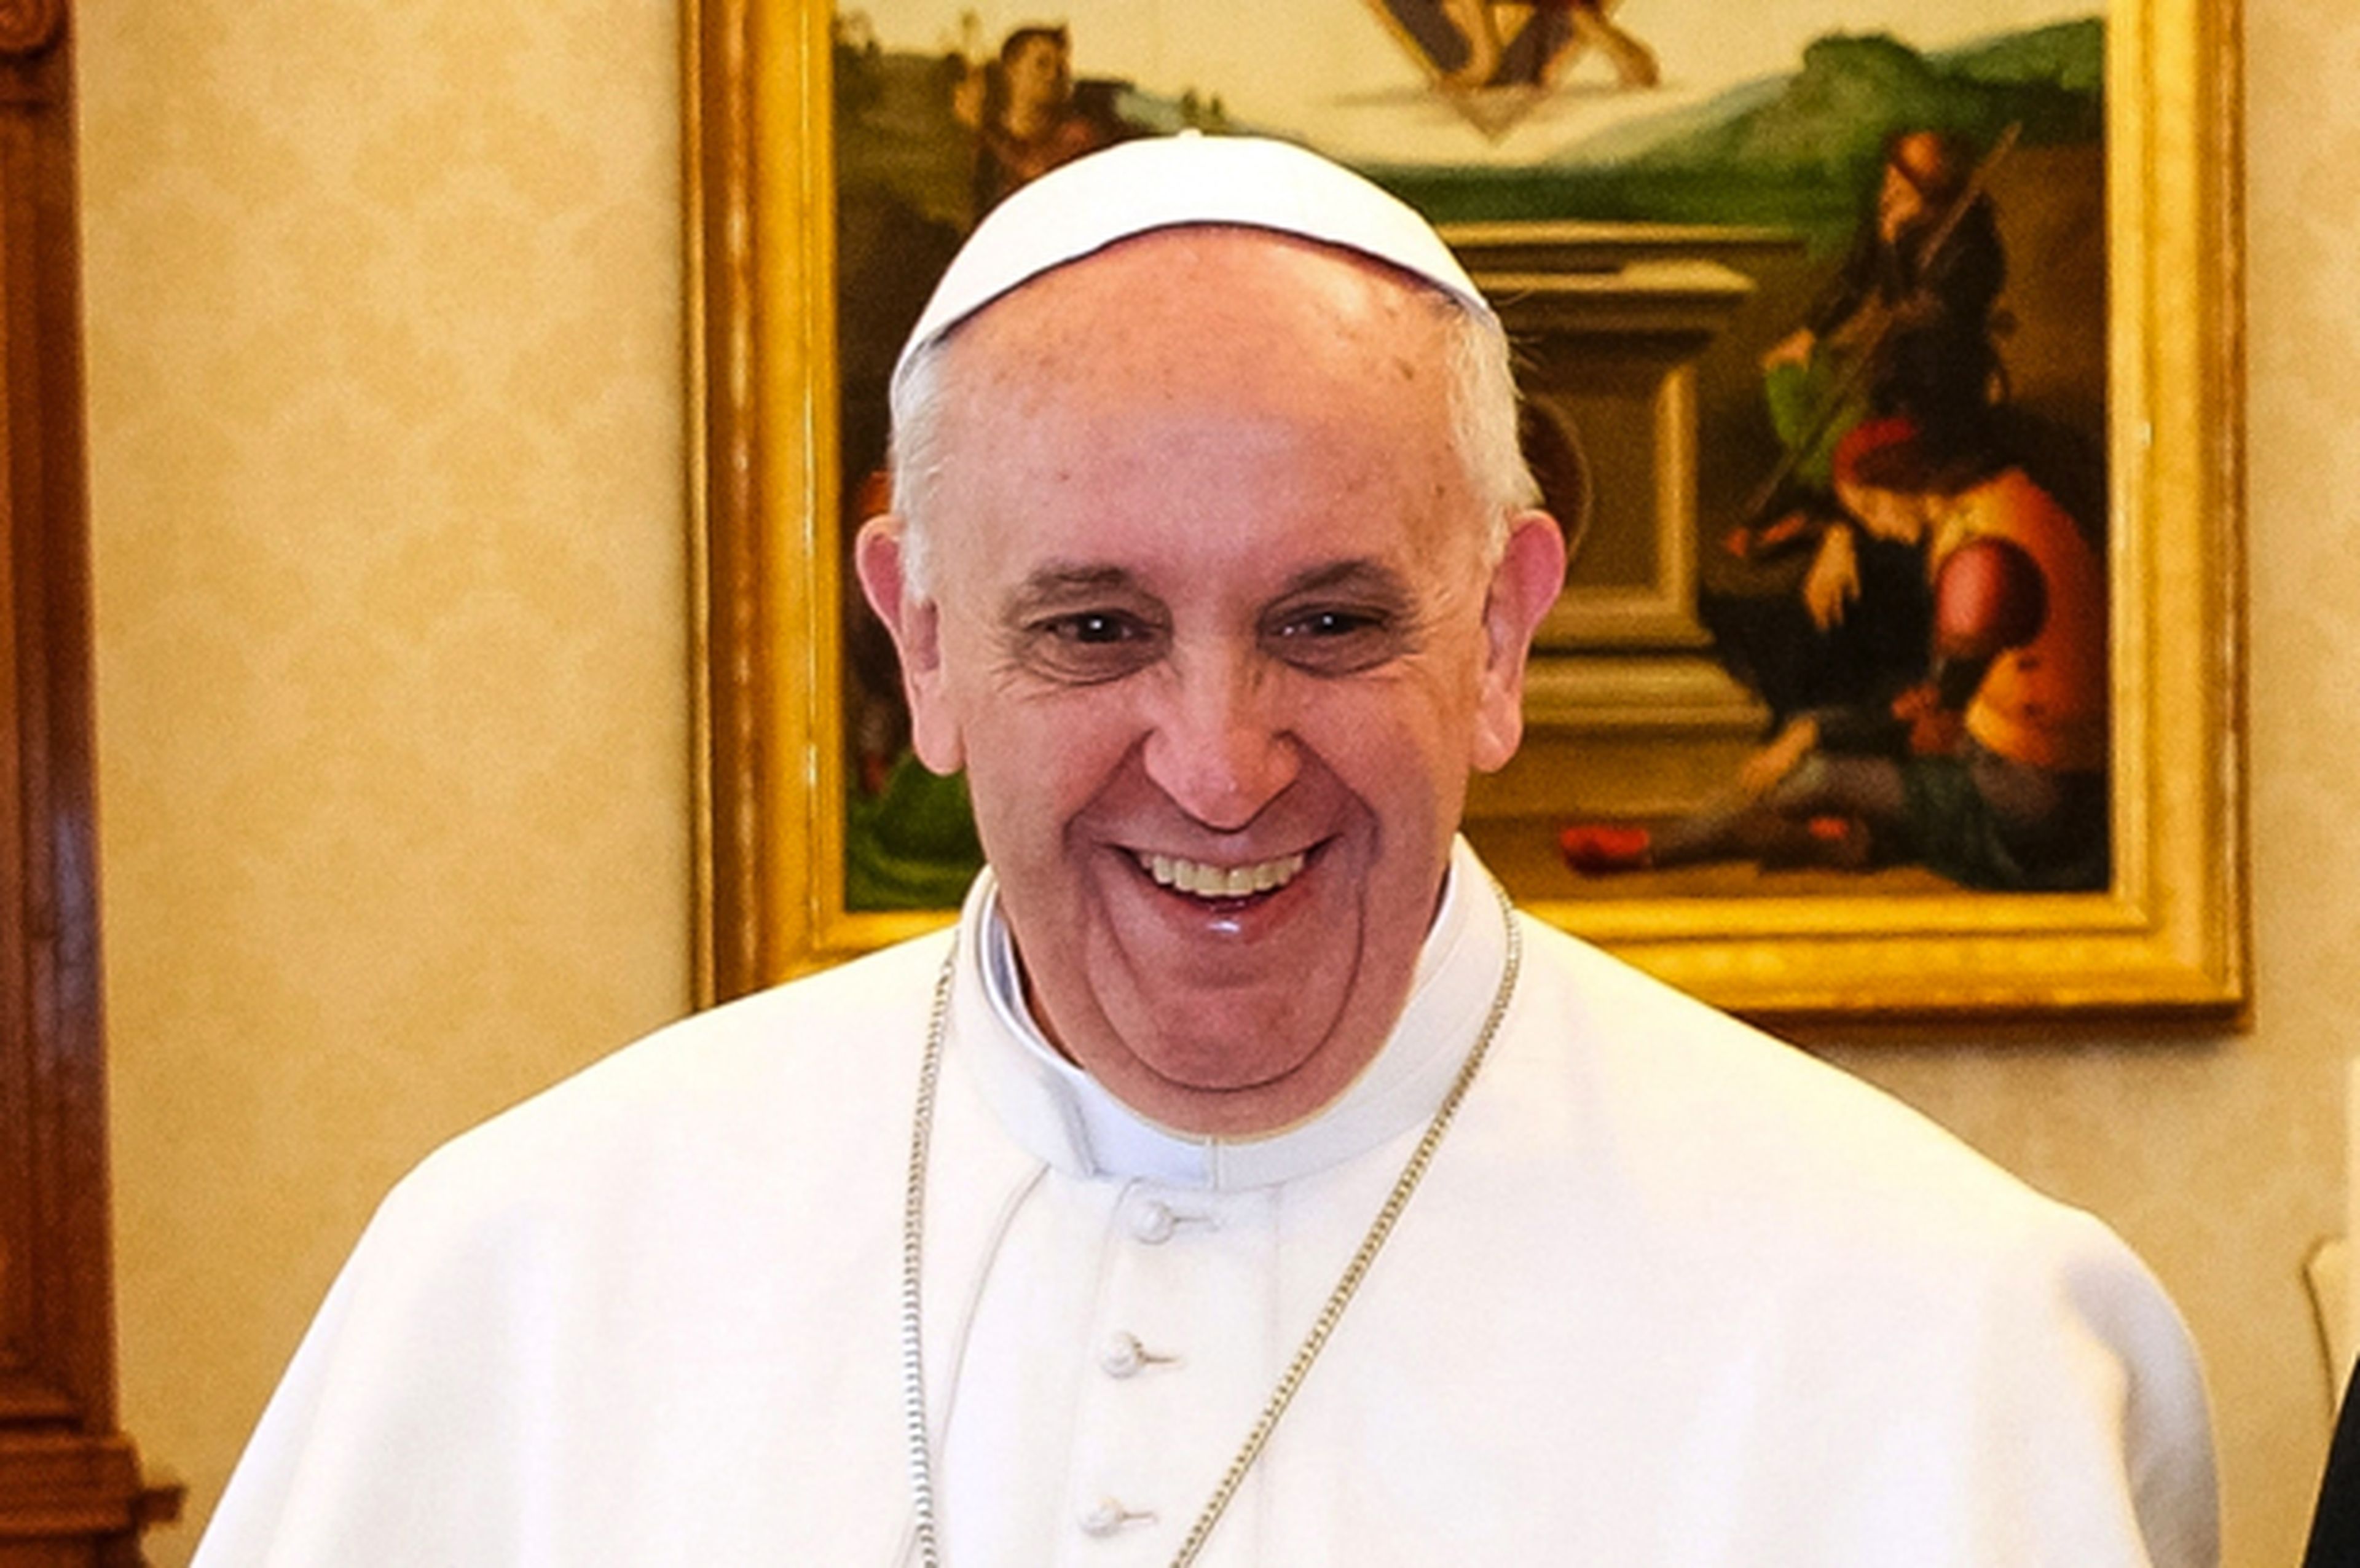 El Papa Francisco otorgará indulgencias vía Twitter